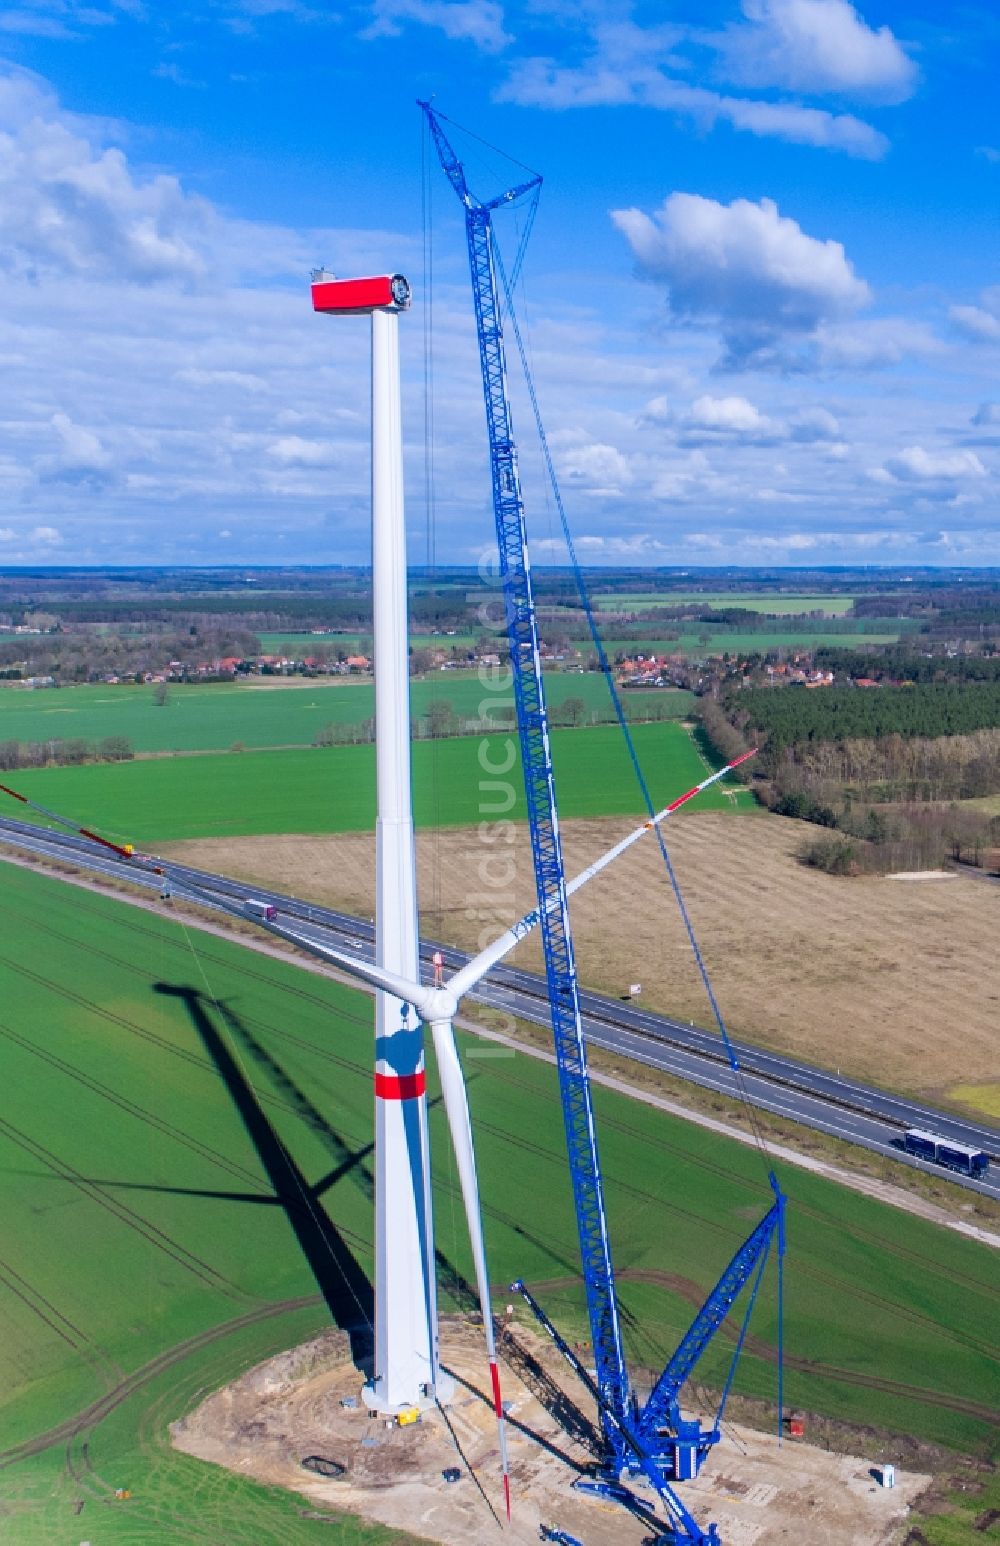 Luftaufnahme Hoort - Baustelle zur Windrad- Montage auf einem Feld in Hoort im Bundesland Mecklenburg-Vorpommern, Deutschland